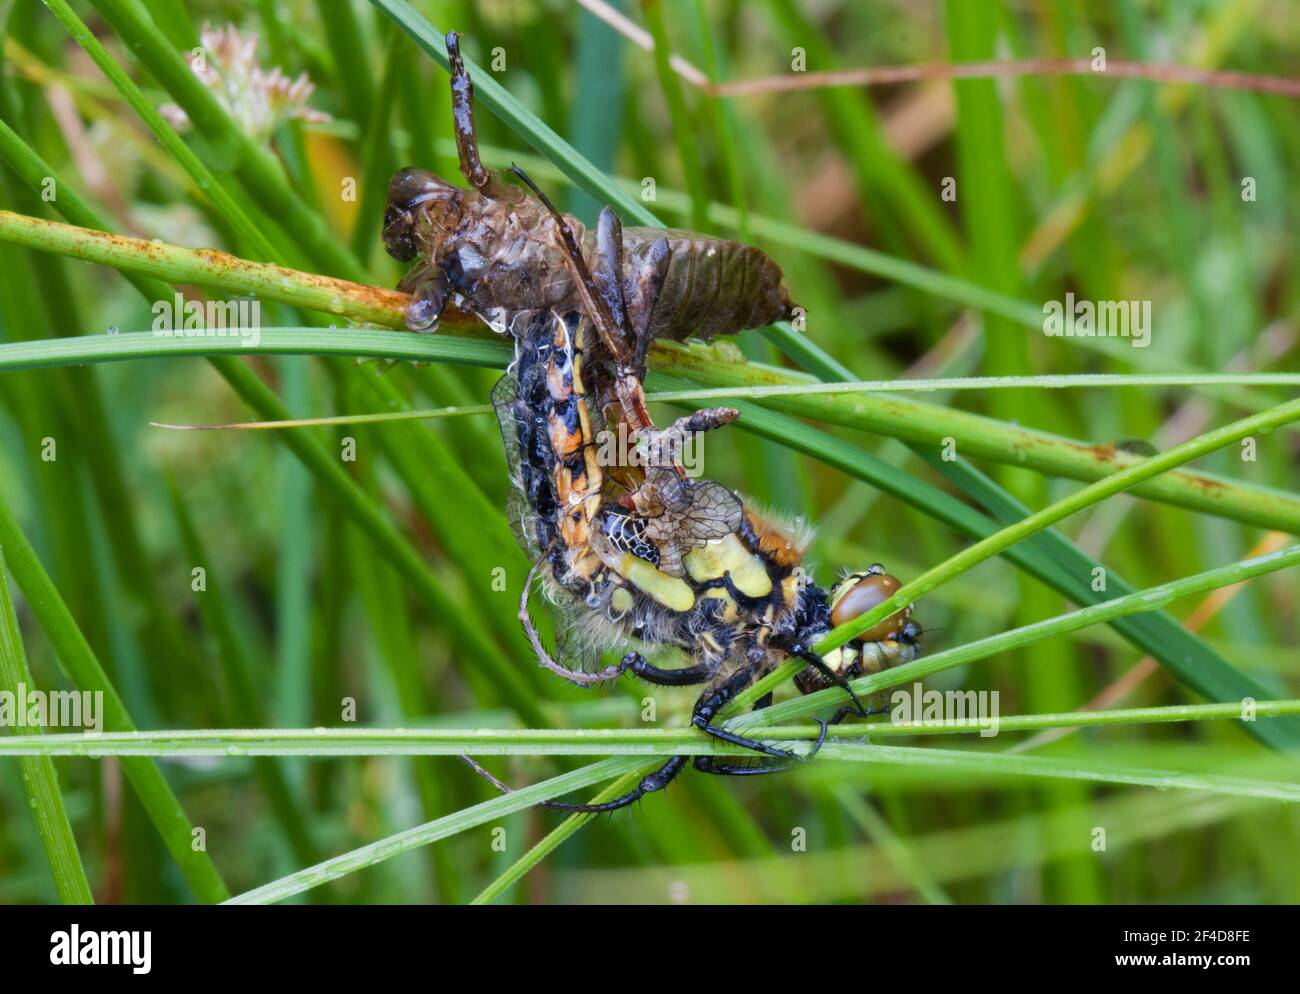 Emergencia y metamorfosis: La libélula se arrastra fuera de la piel larval Foto de stock